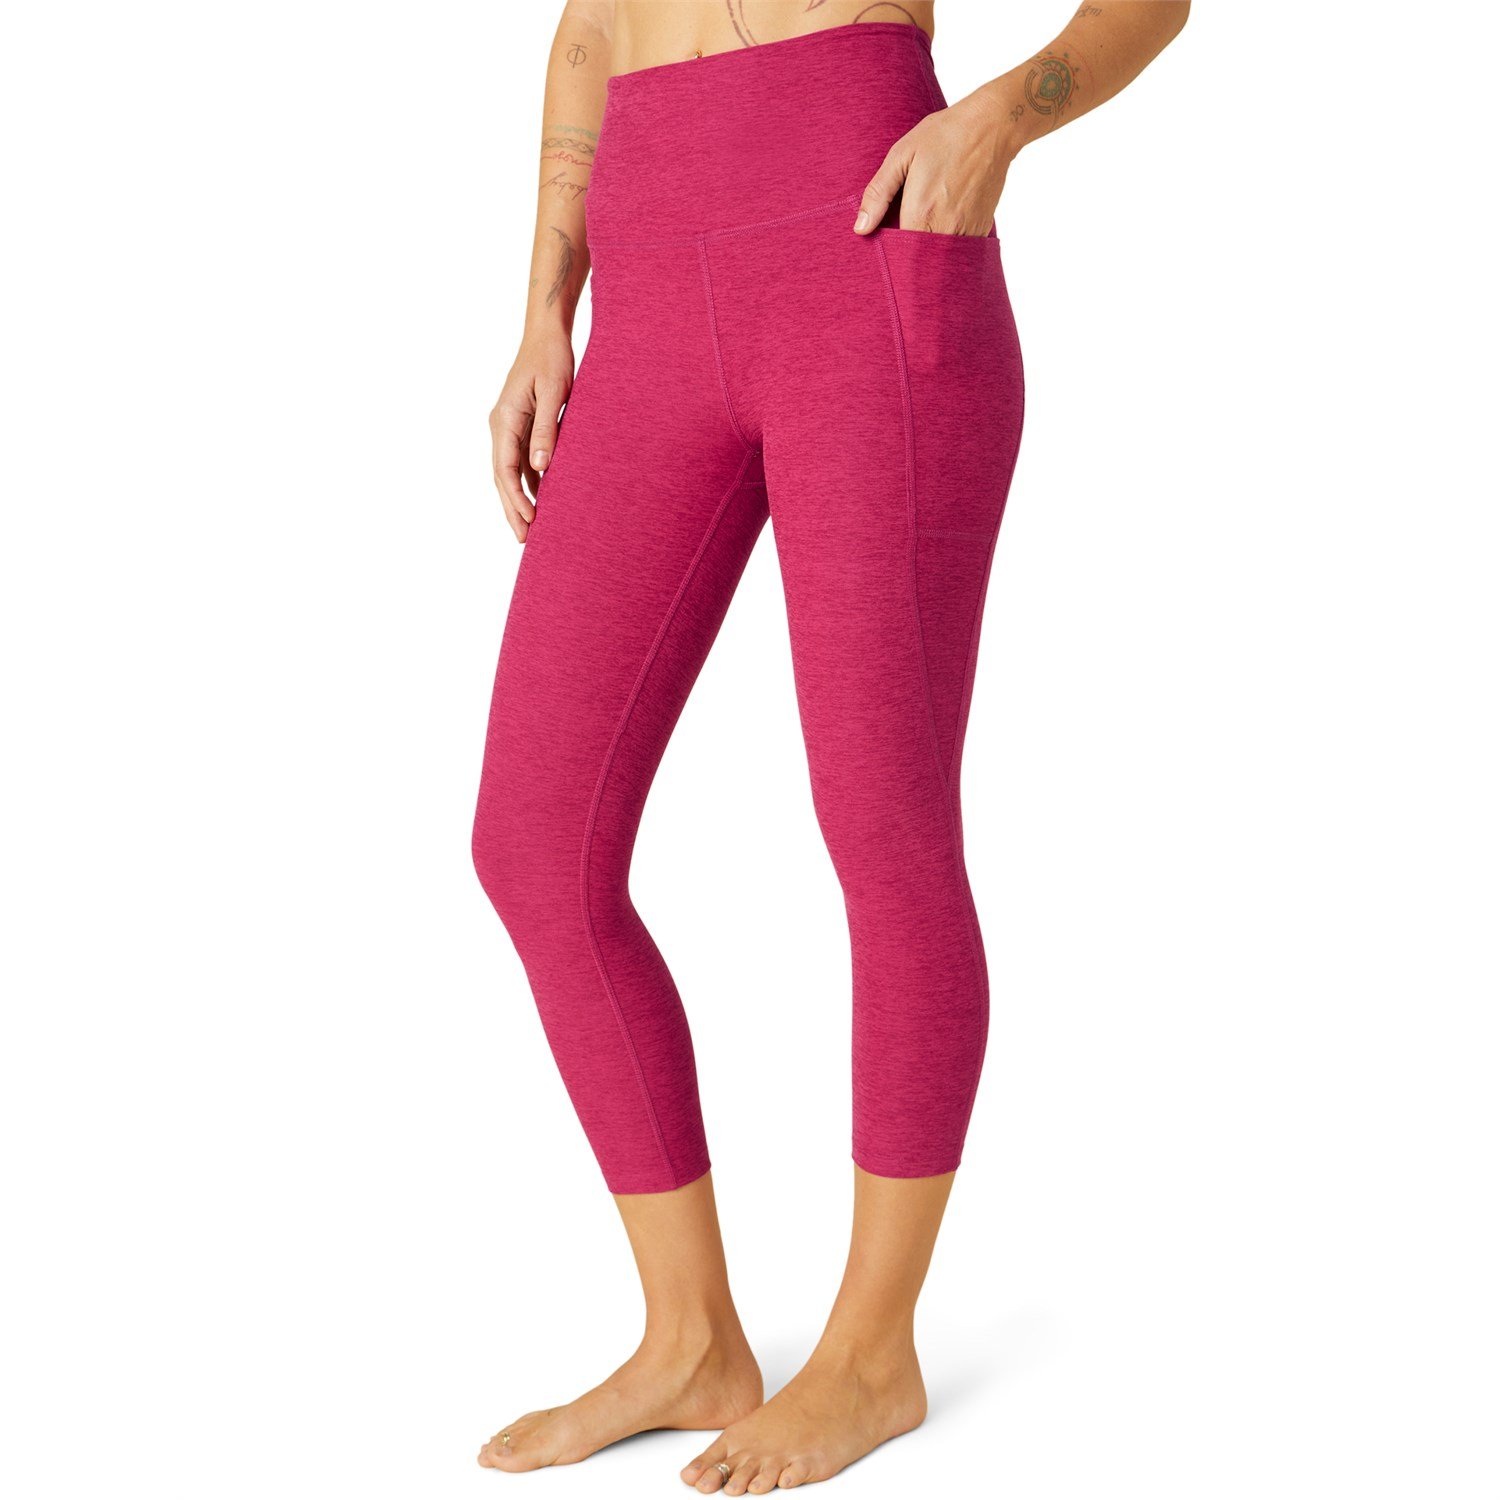 https://images.evo.com/imgp/zoom/229597/938282/beyond-yoga-spacedye-out-of-pocket-high-waisted-capri-leggings-women-s-.jpg